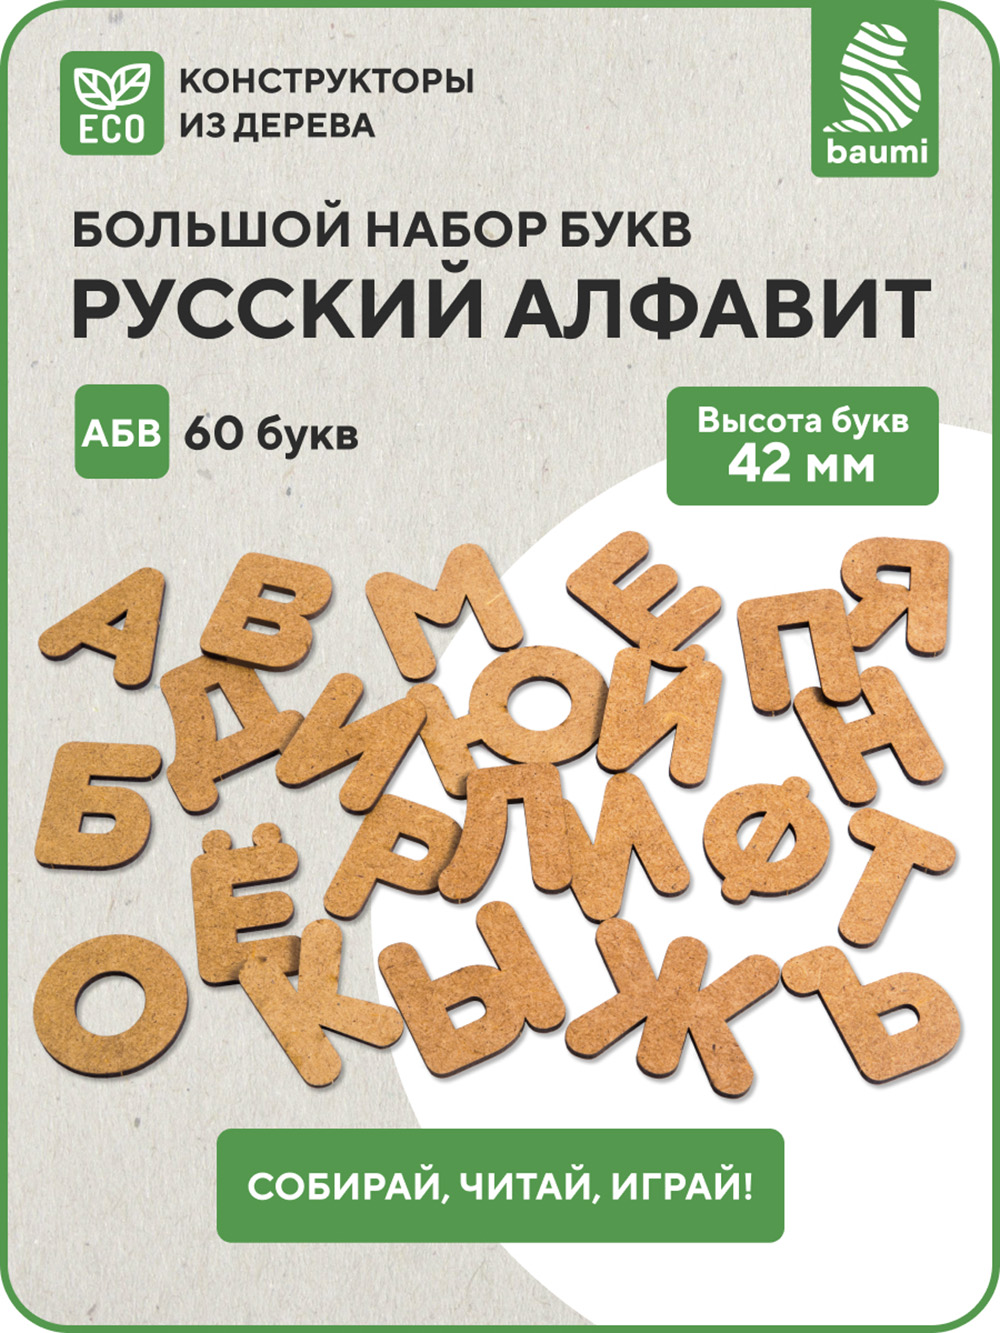 Деревянный набор Русский алфавит baumi арт.15001